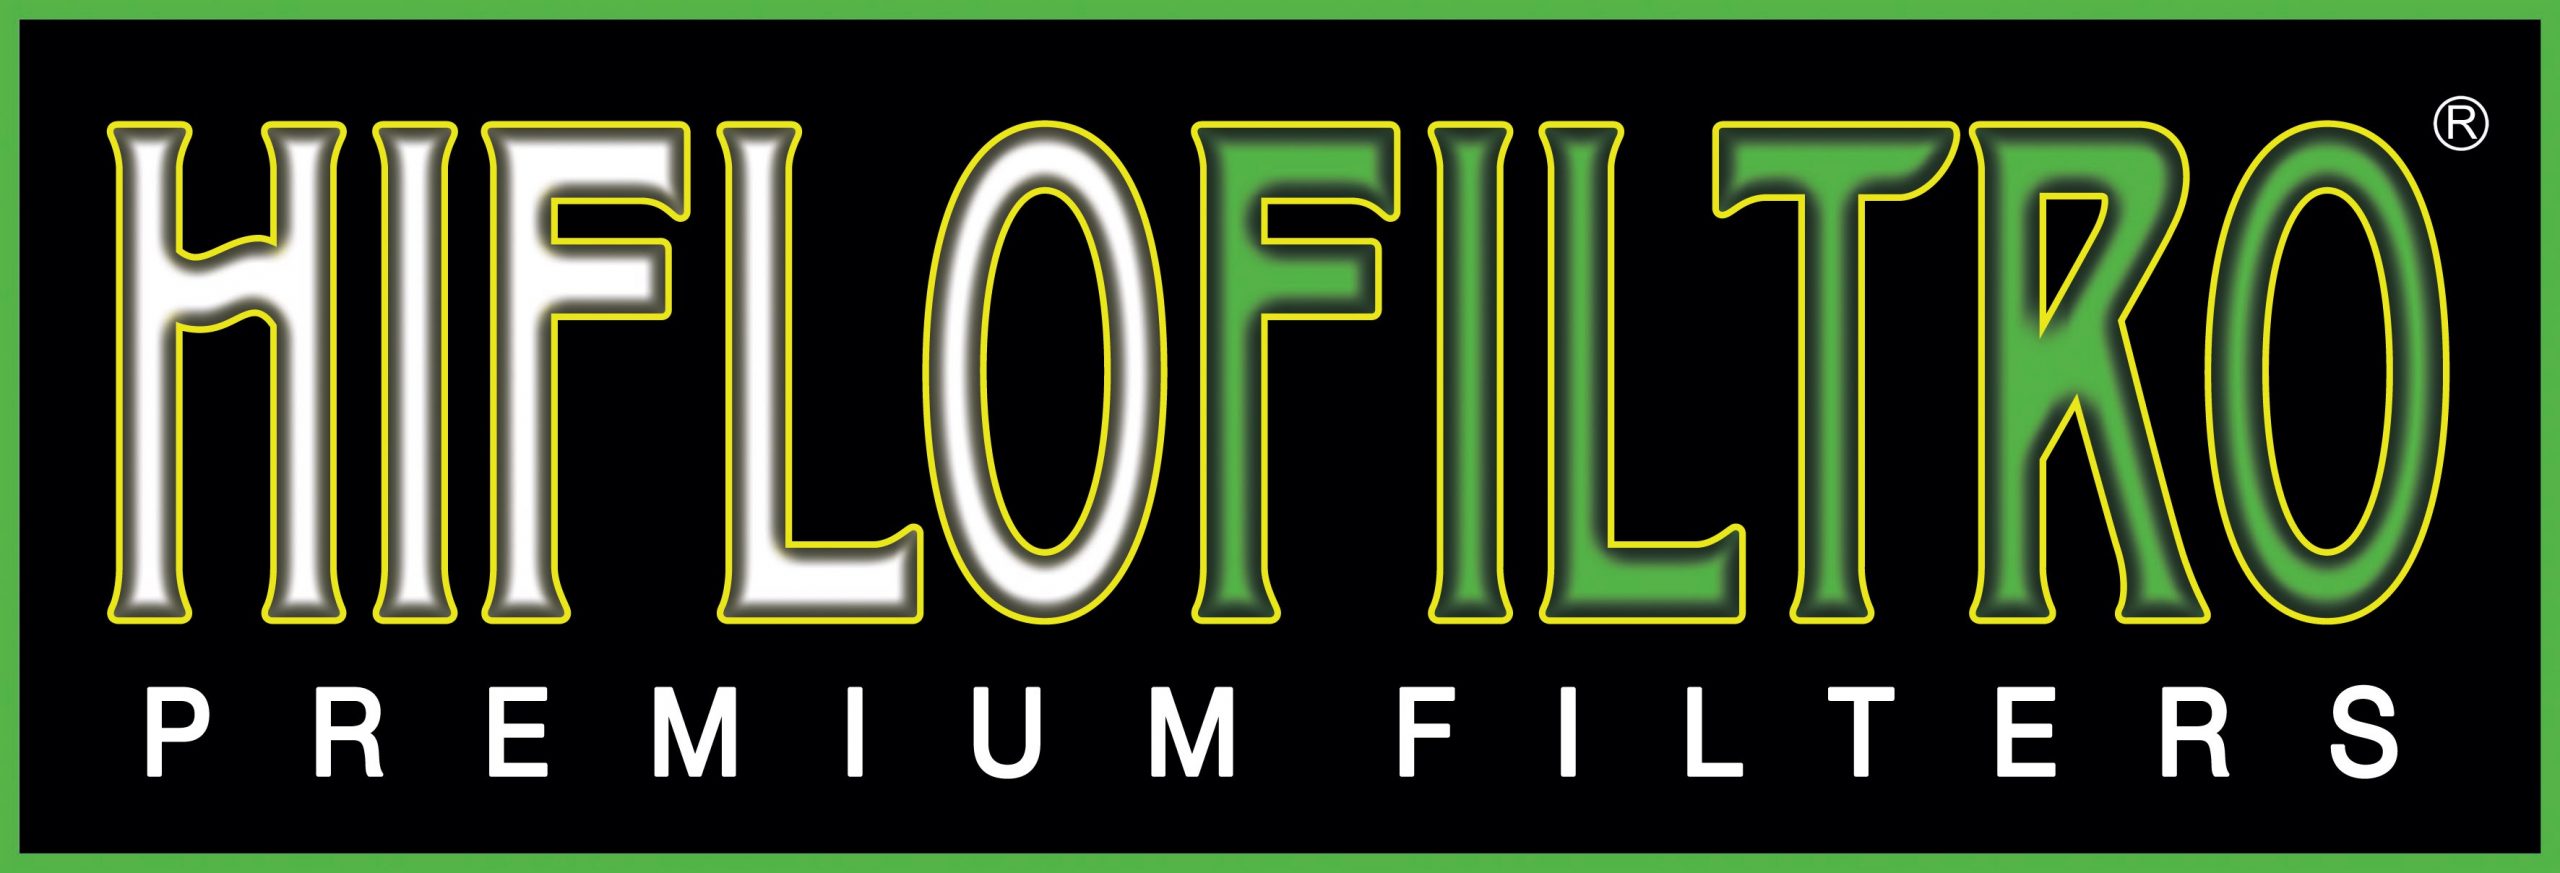 Hi Flo Filtro Premium Filters